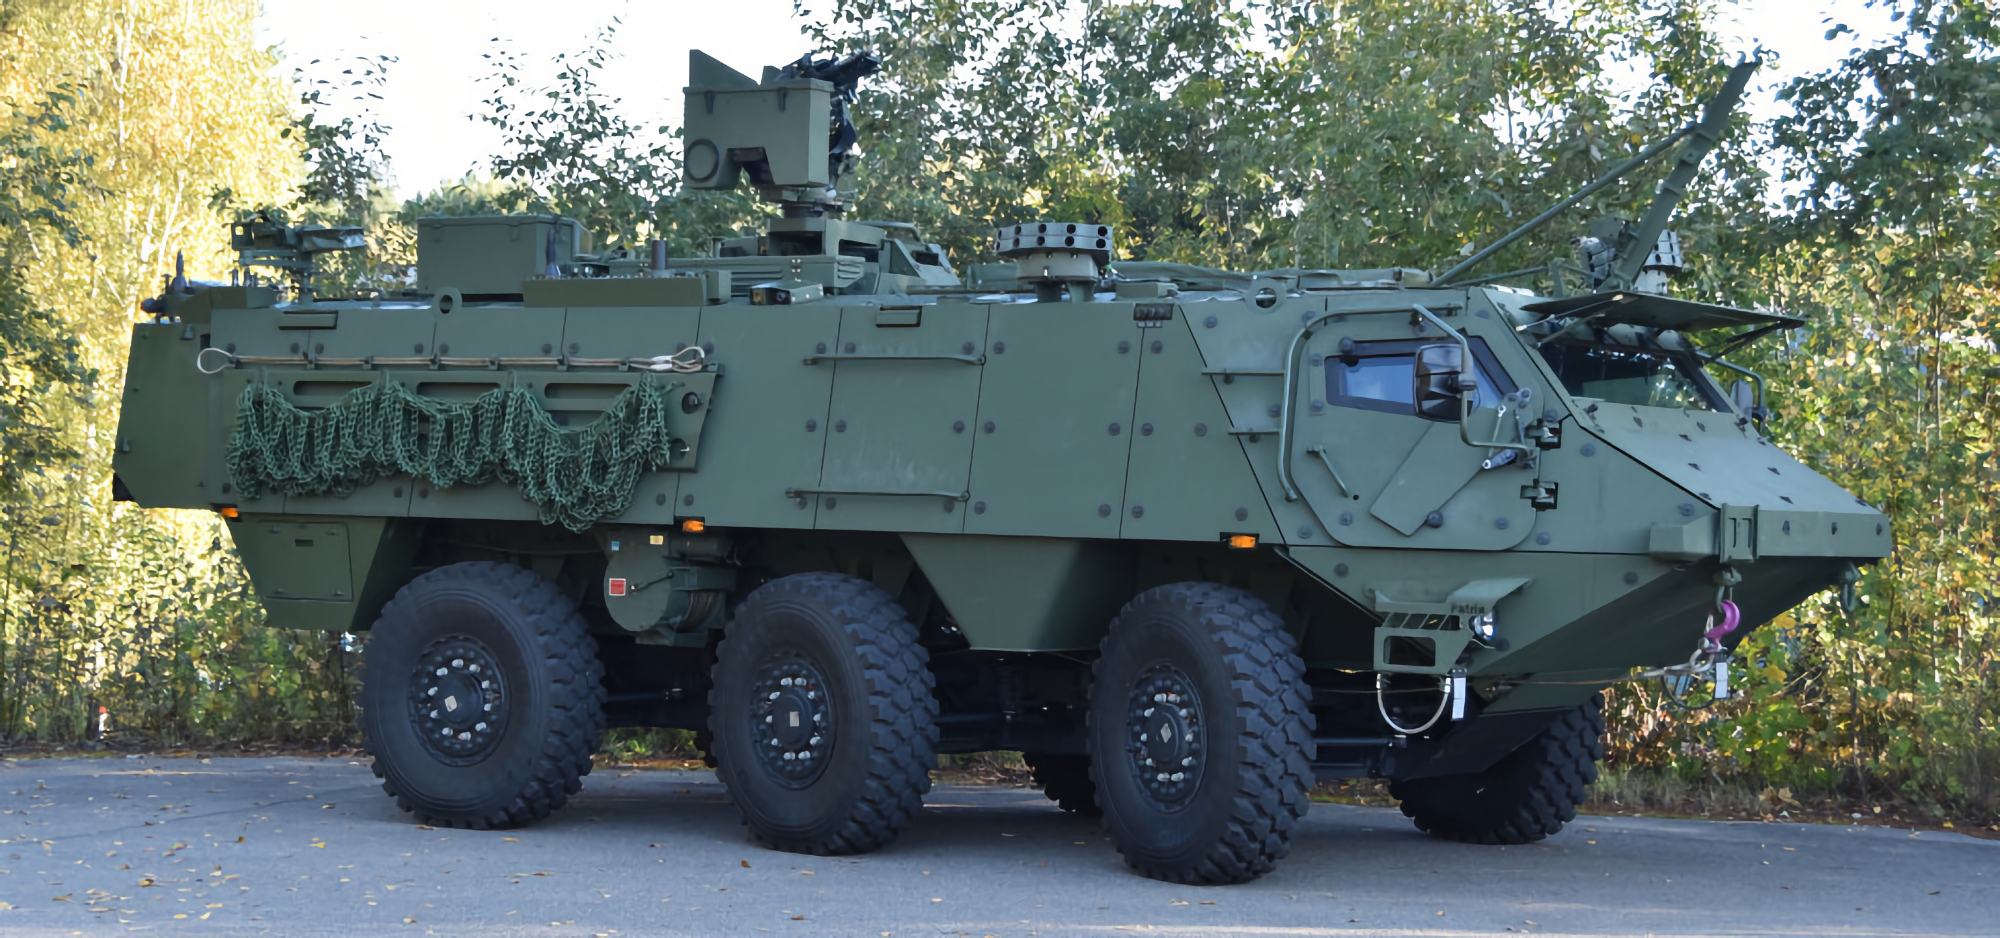 Финляндия покупает бронетранспортёры Patria 66 с дистанционно управляемыми боевыми модулями Protector